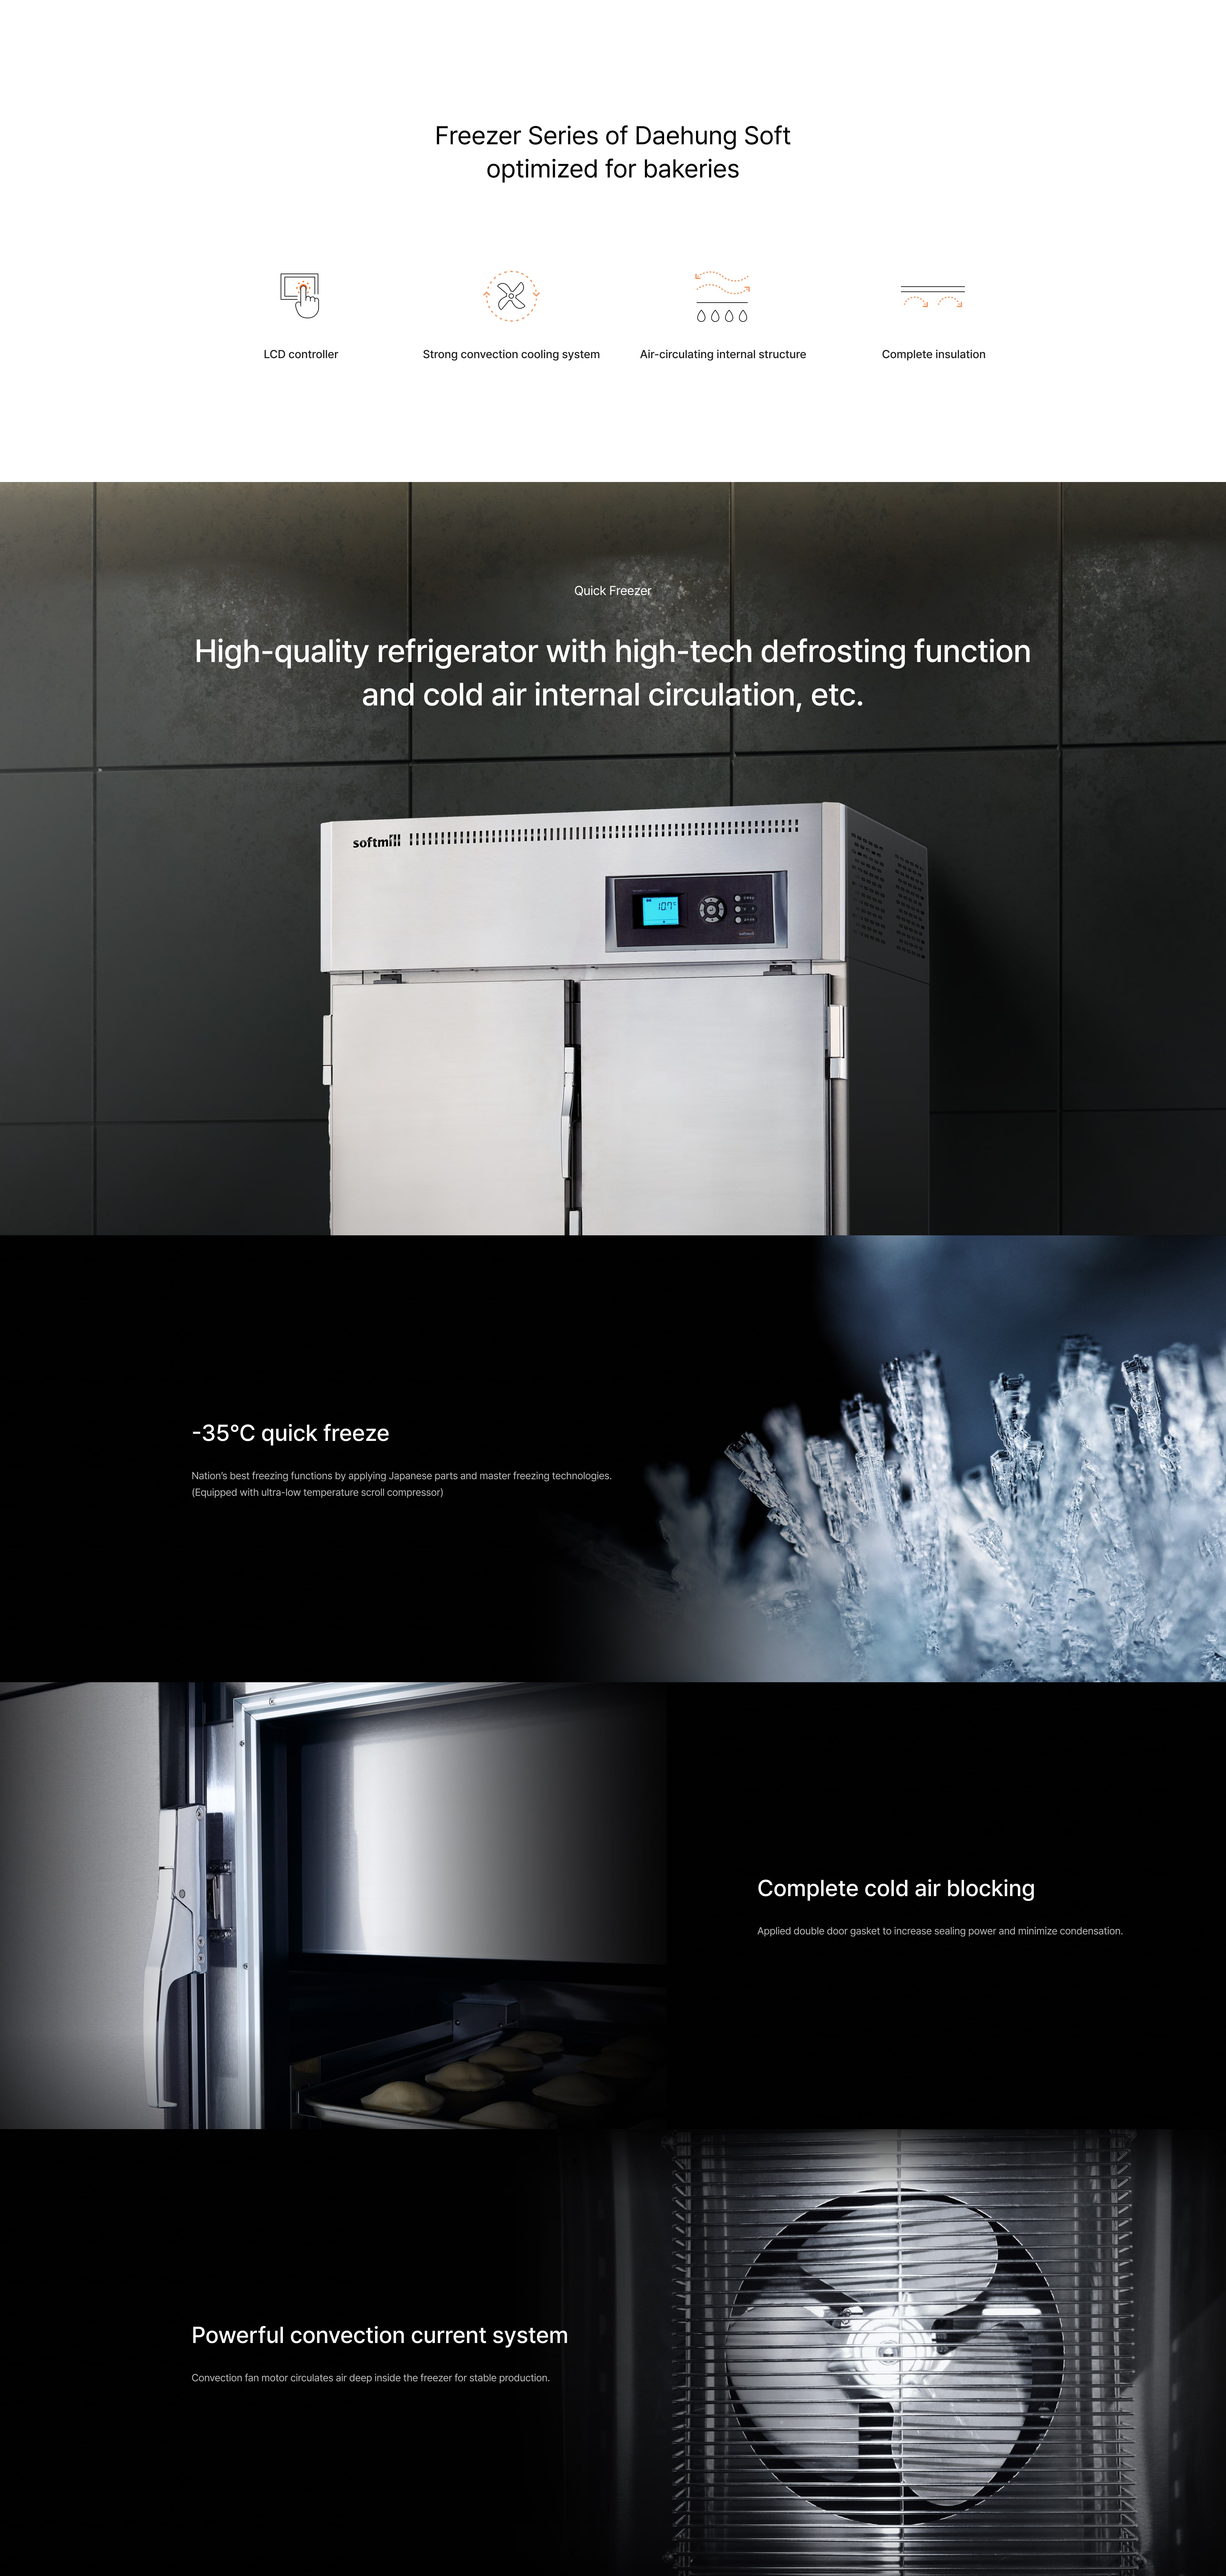 Quick freezer 4 doors Description iamges